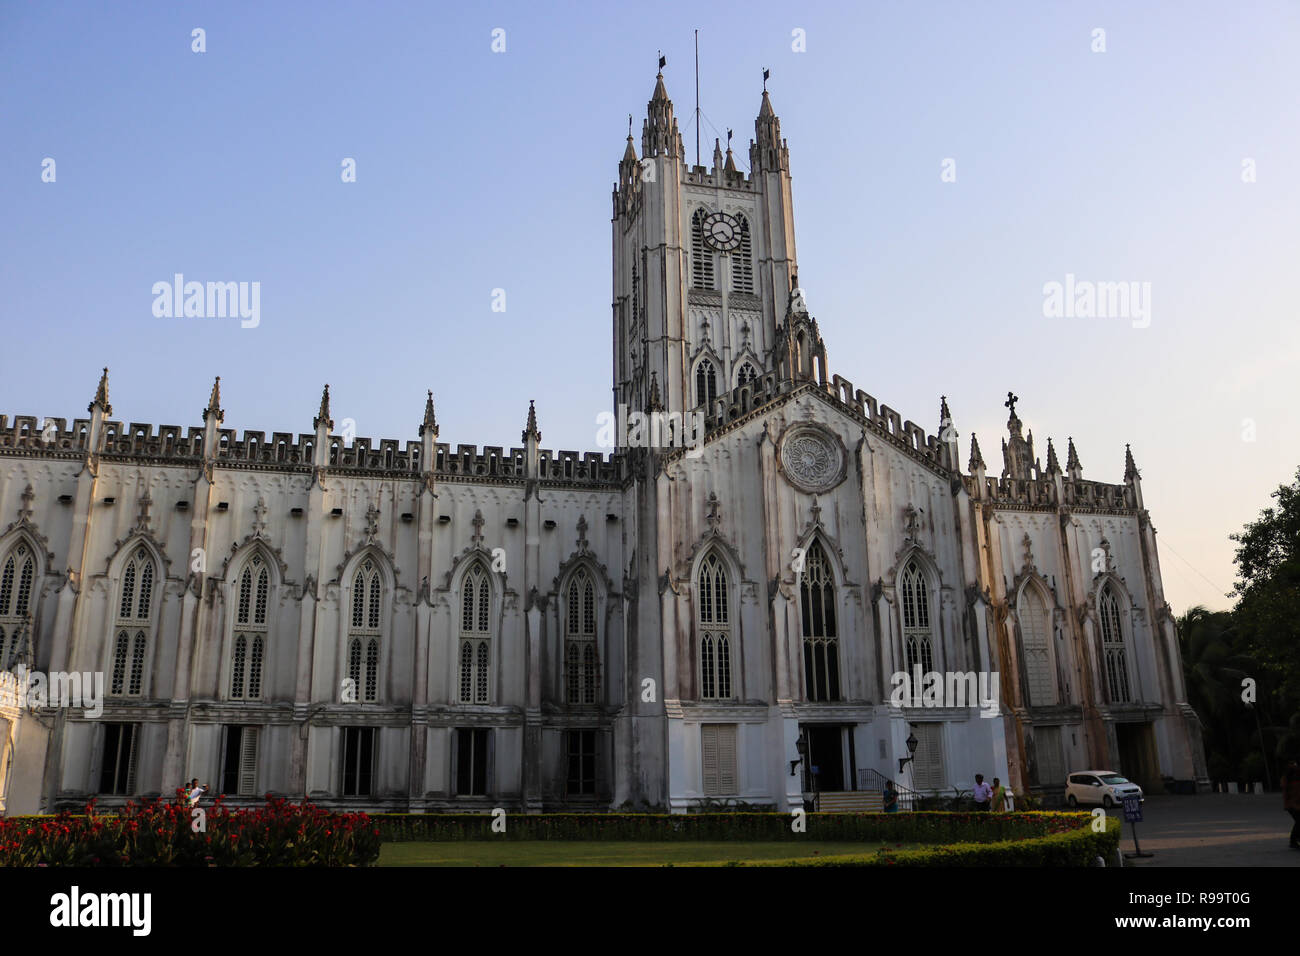 La Cathédrale St Paul est une cathédrale anglicane de l'Eglise de l'expérience de Kolkata, au Bengale occidental, en Inde, a noté pour son architecture gothique. Banque D'Images